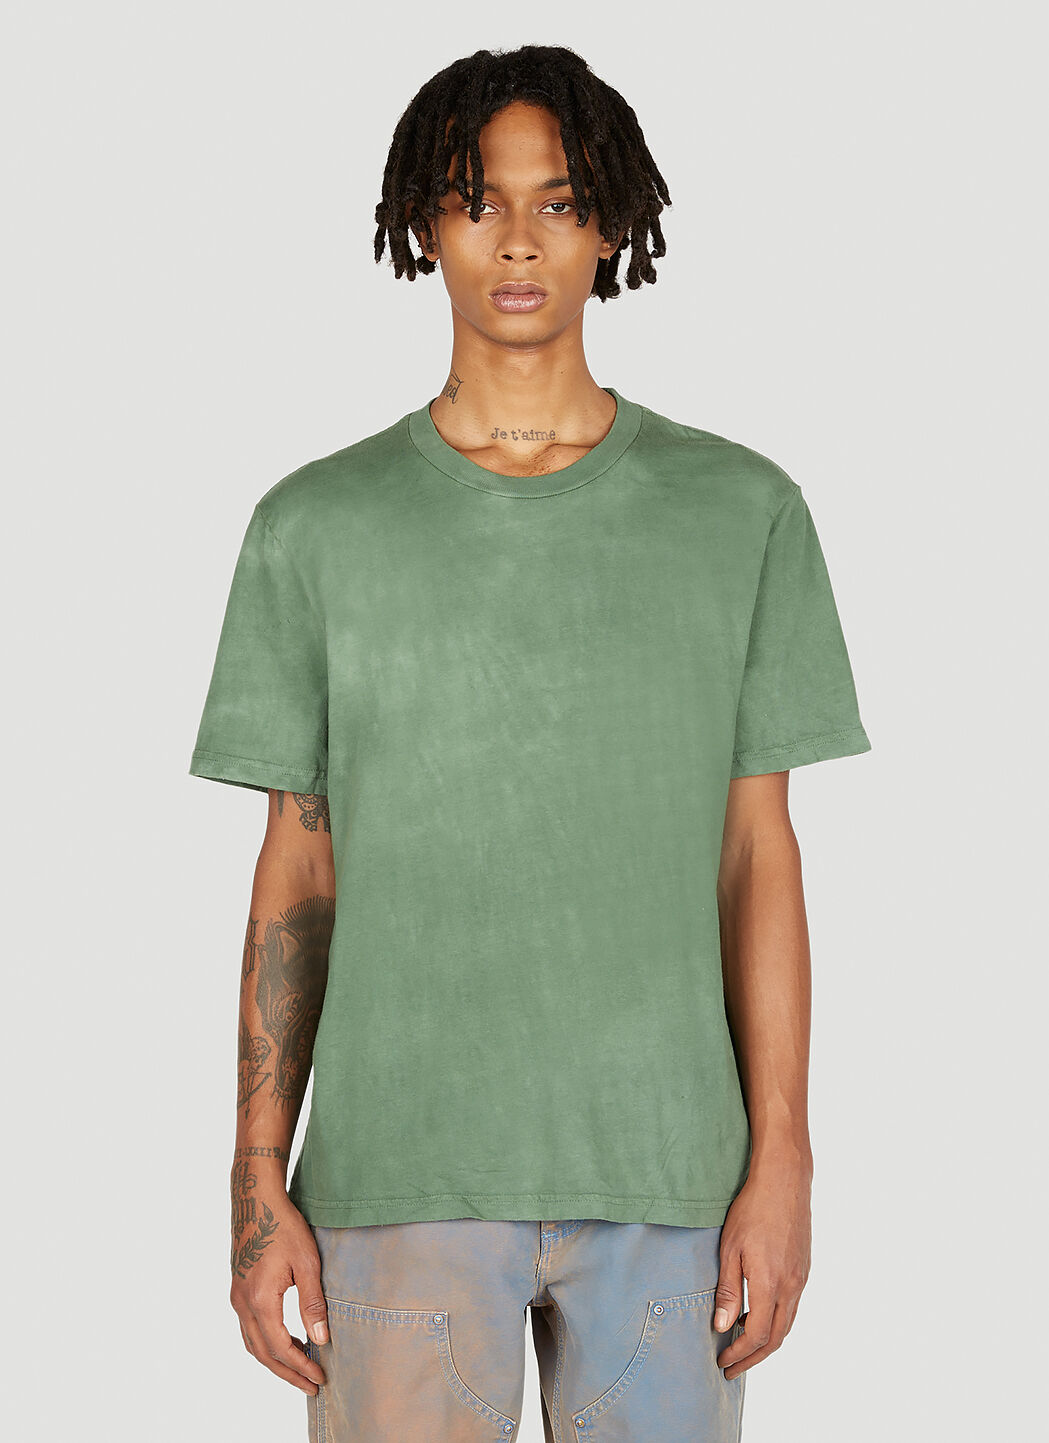 Jil Sander+ Splashed 短袖 T 恤 黑色 jsp0149011